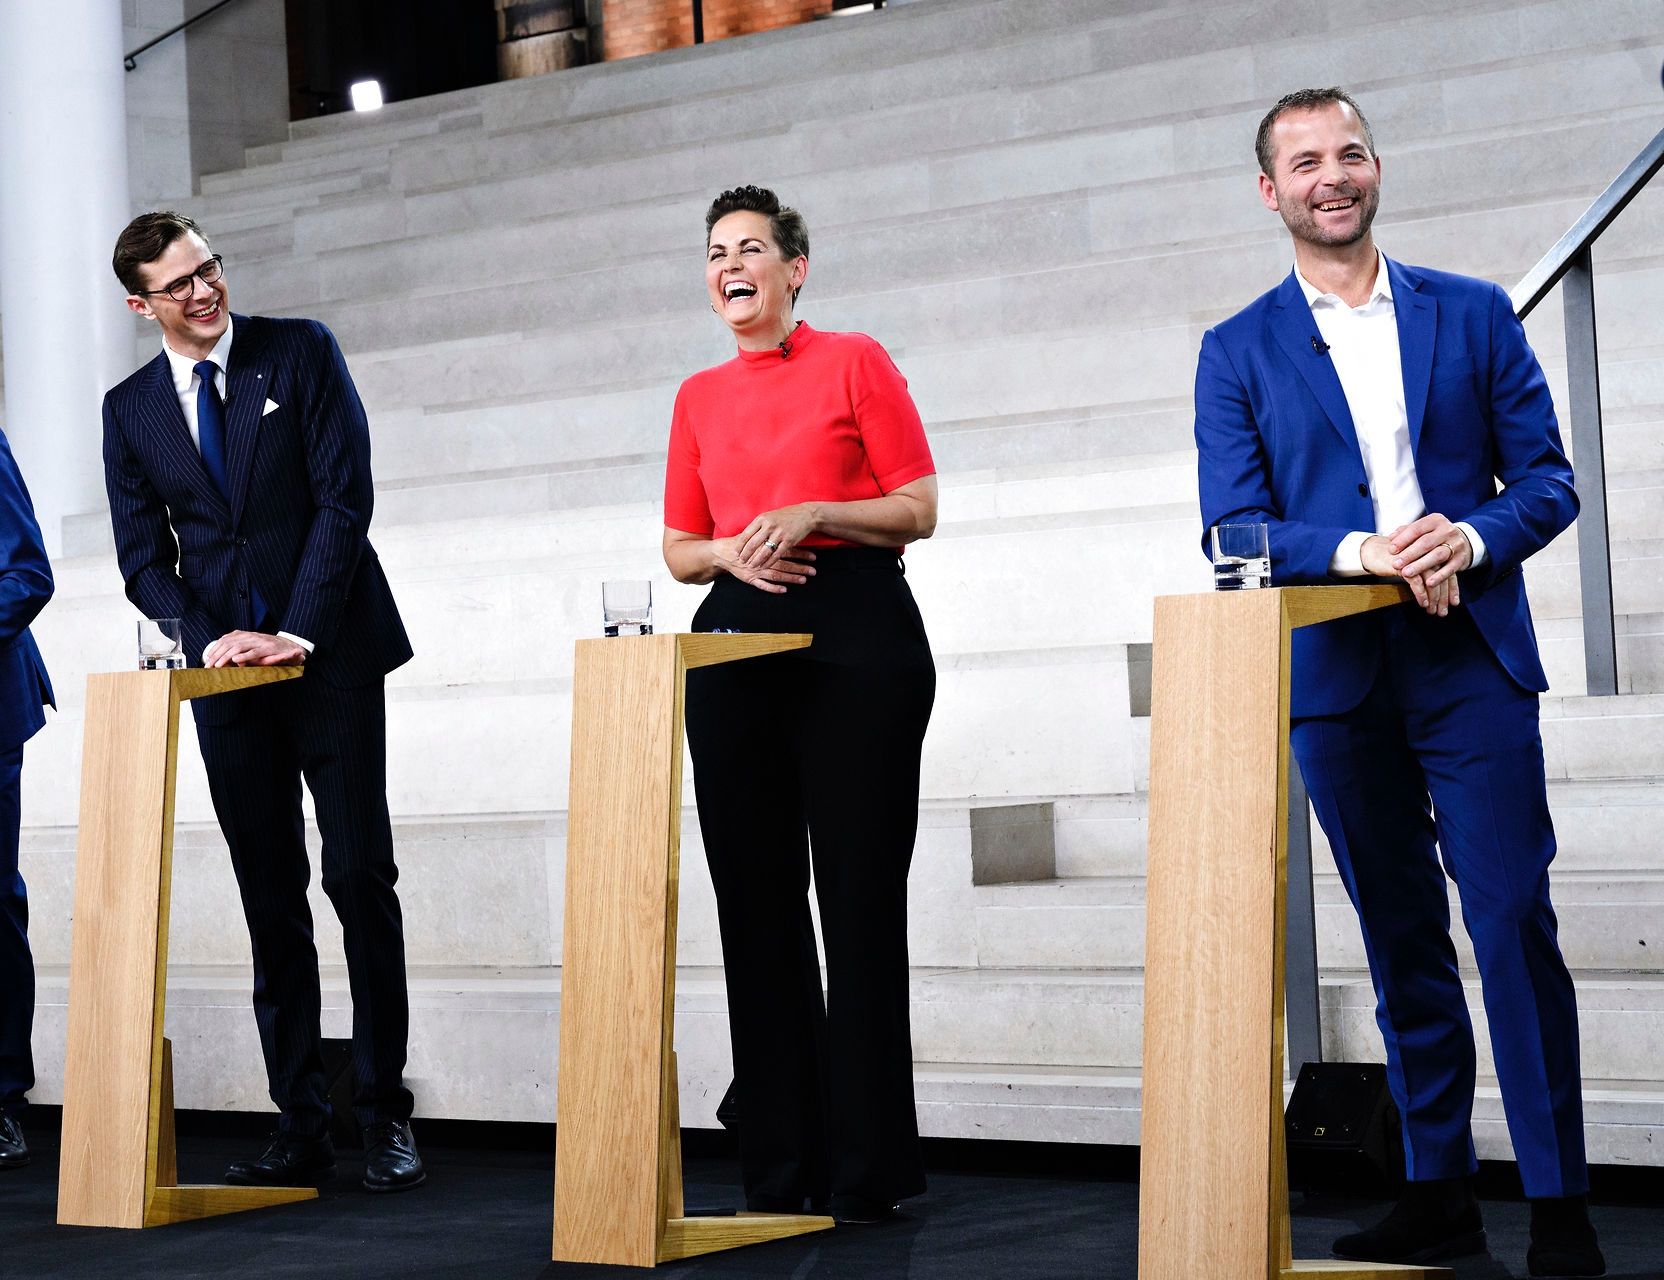 Det er godt, at de danske politikere kan hygge sig med hinanden. Men blev gårsdagens debat for hyggelig seriøsiteten af situationen taget i betragtning? (Foto: Philip Davali/Ritzau Scanpix).